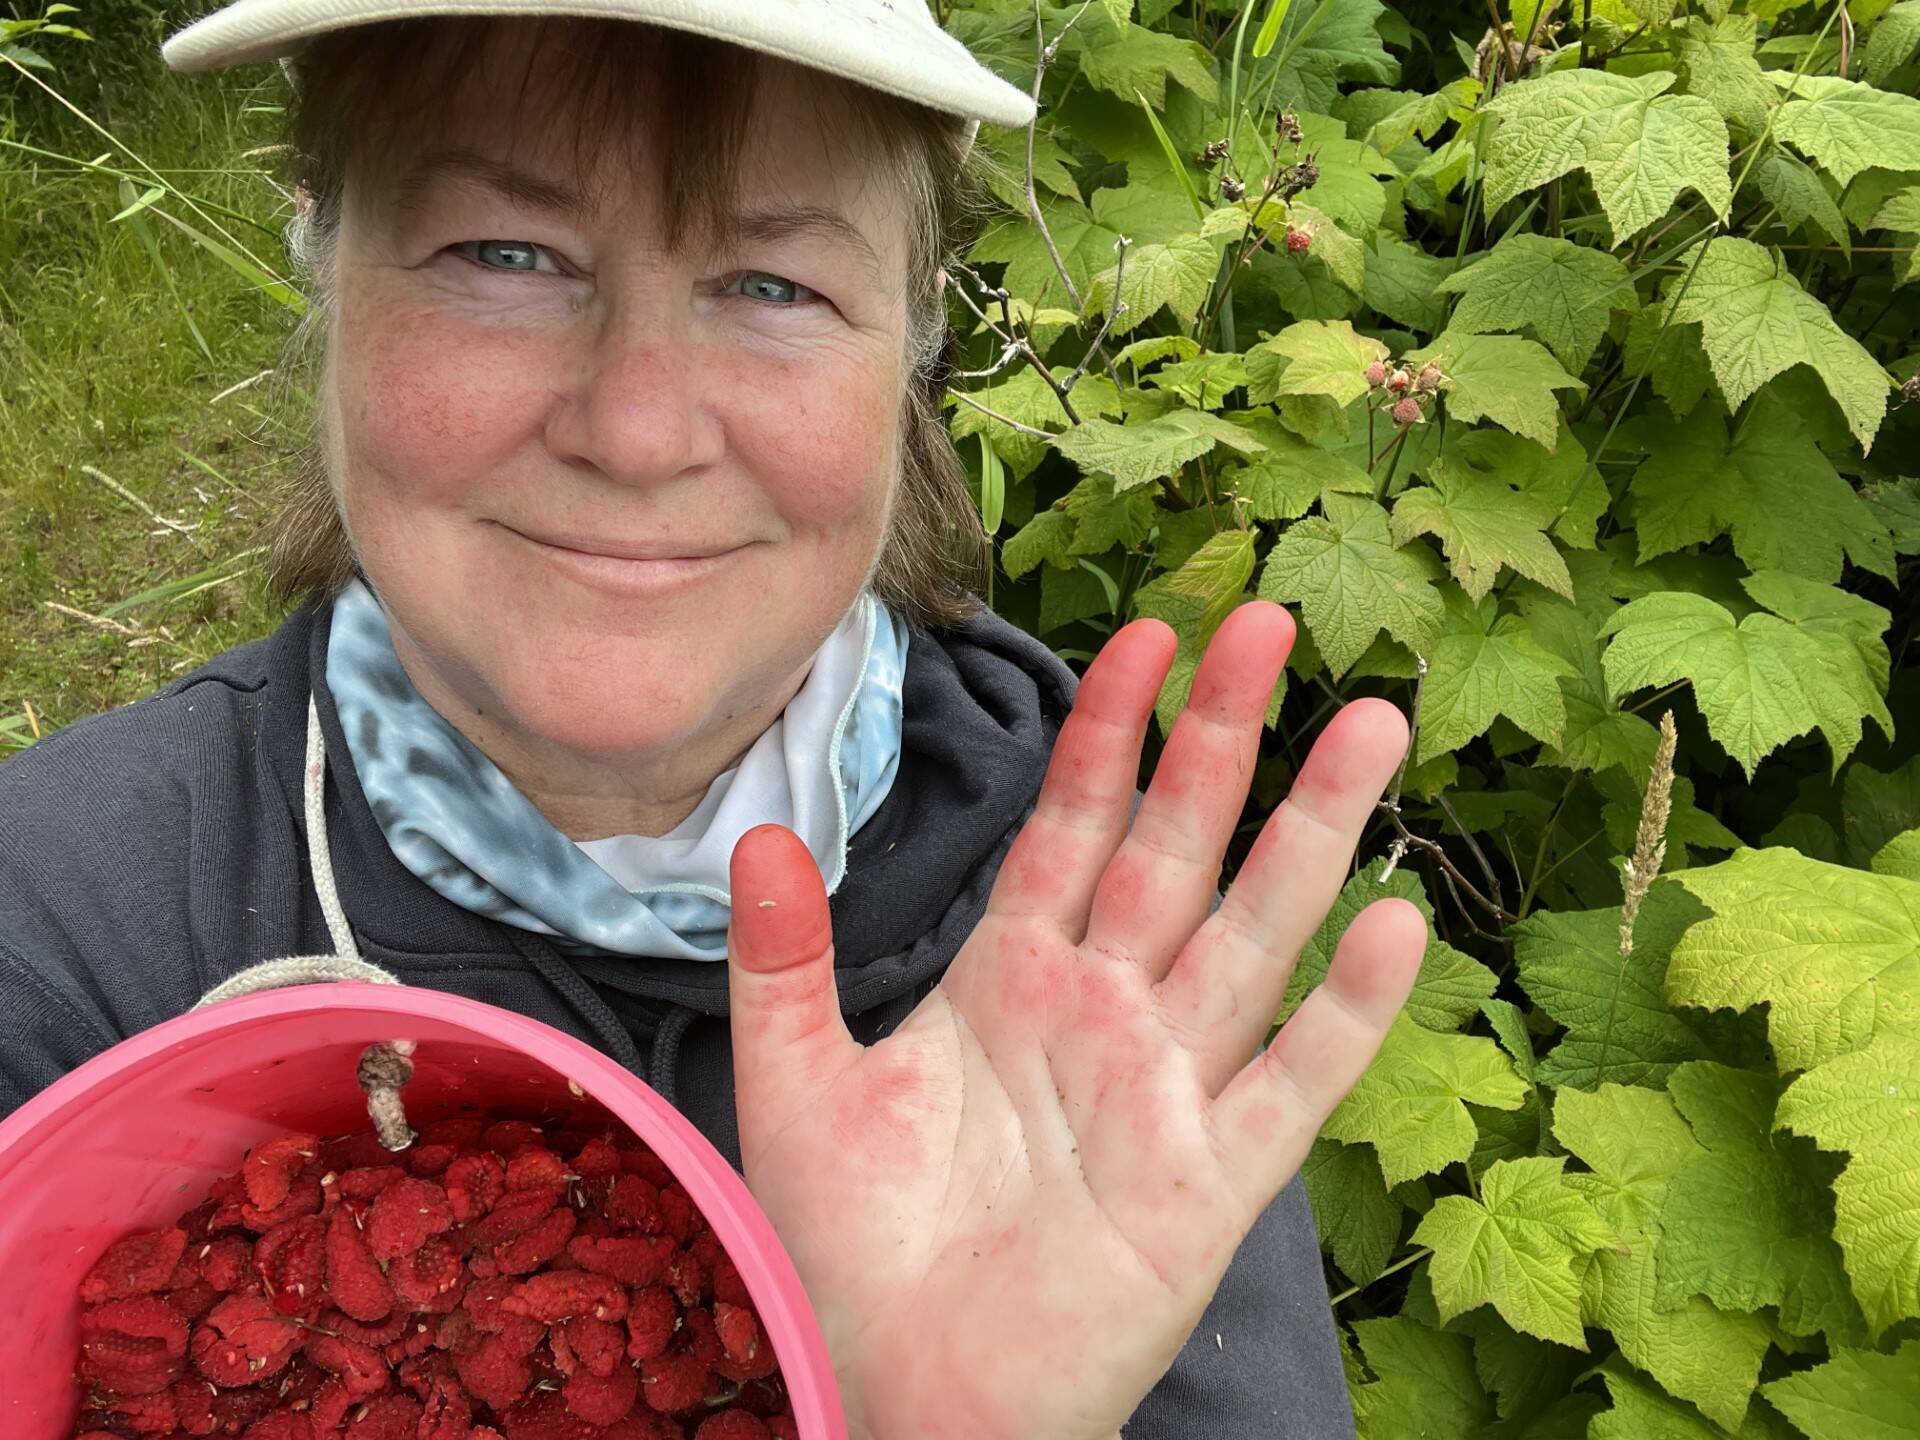 Author Vivian Faith Prescott picking thimbleberries this past summer to make freezer jams. (Photo by Vivian Faith Prescott)